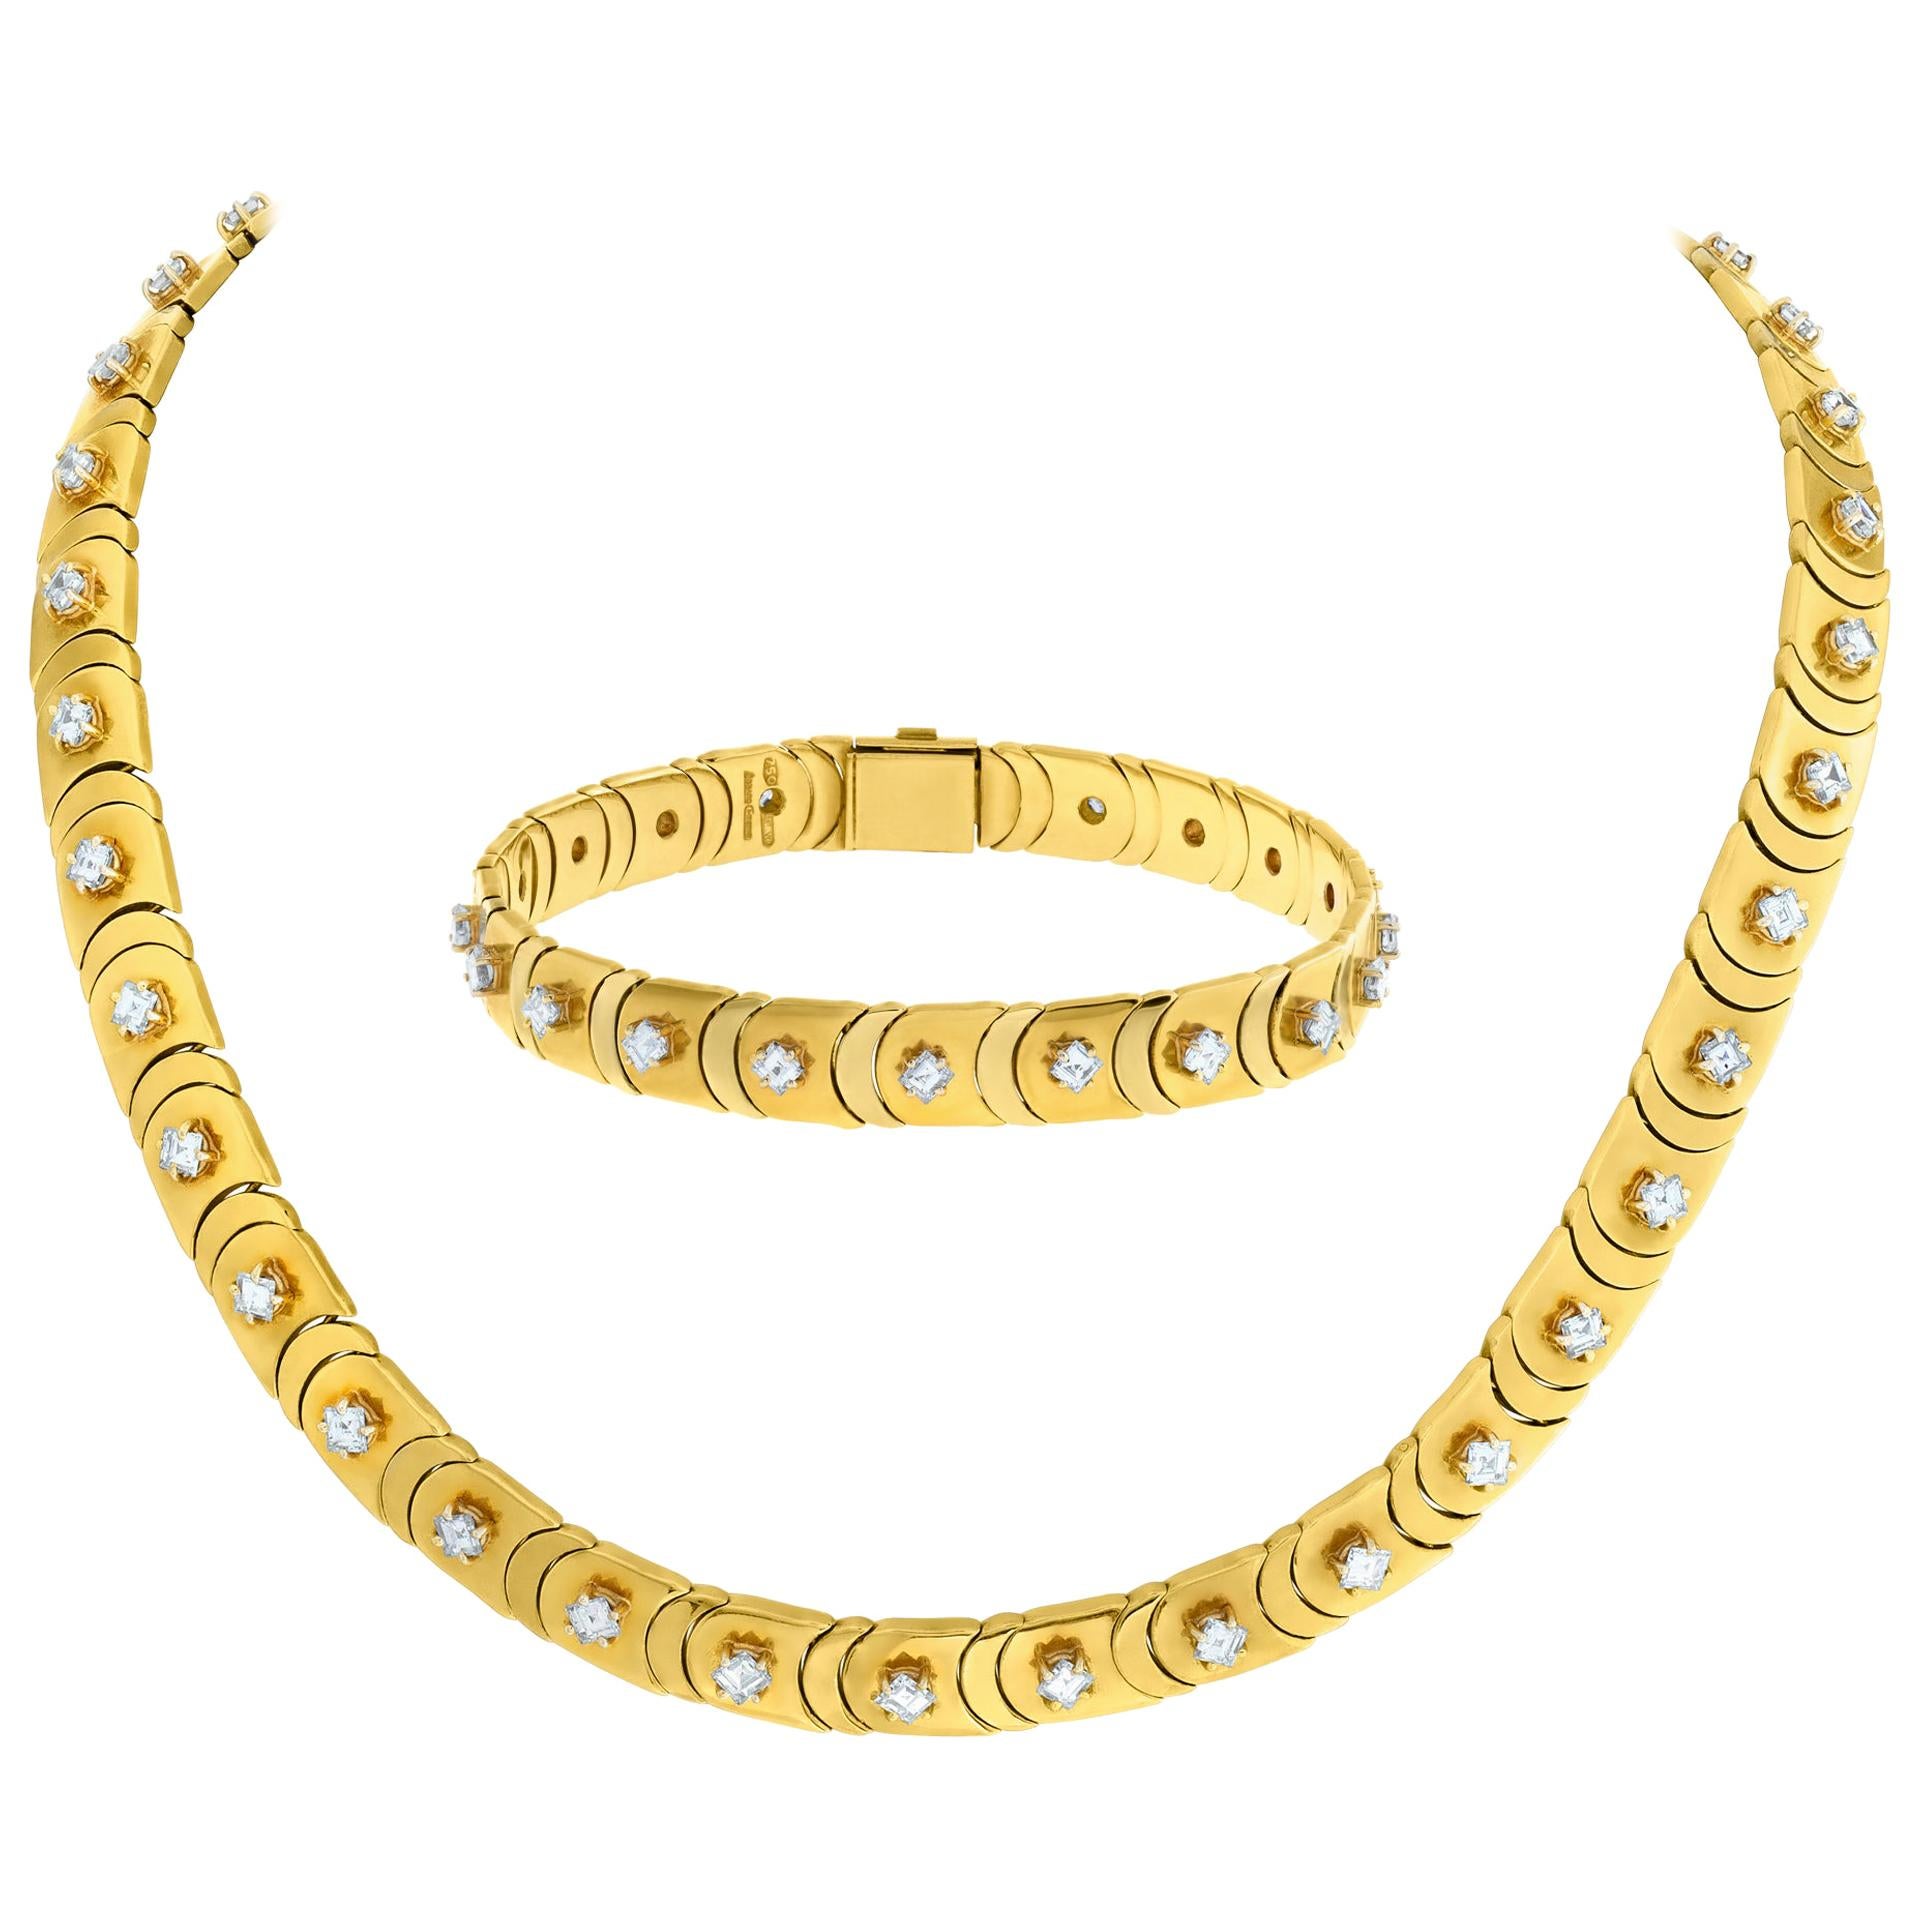 Chimento Diamond Necklace/Choker with Bracelet in 18 Karat